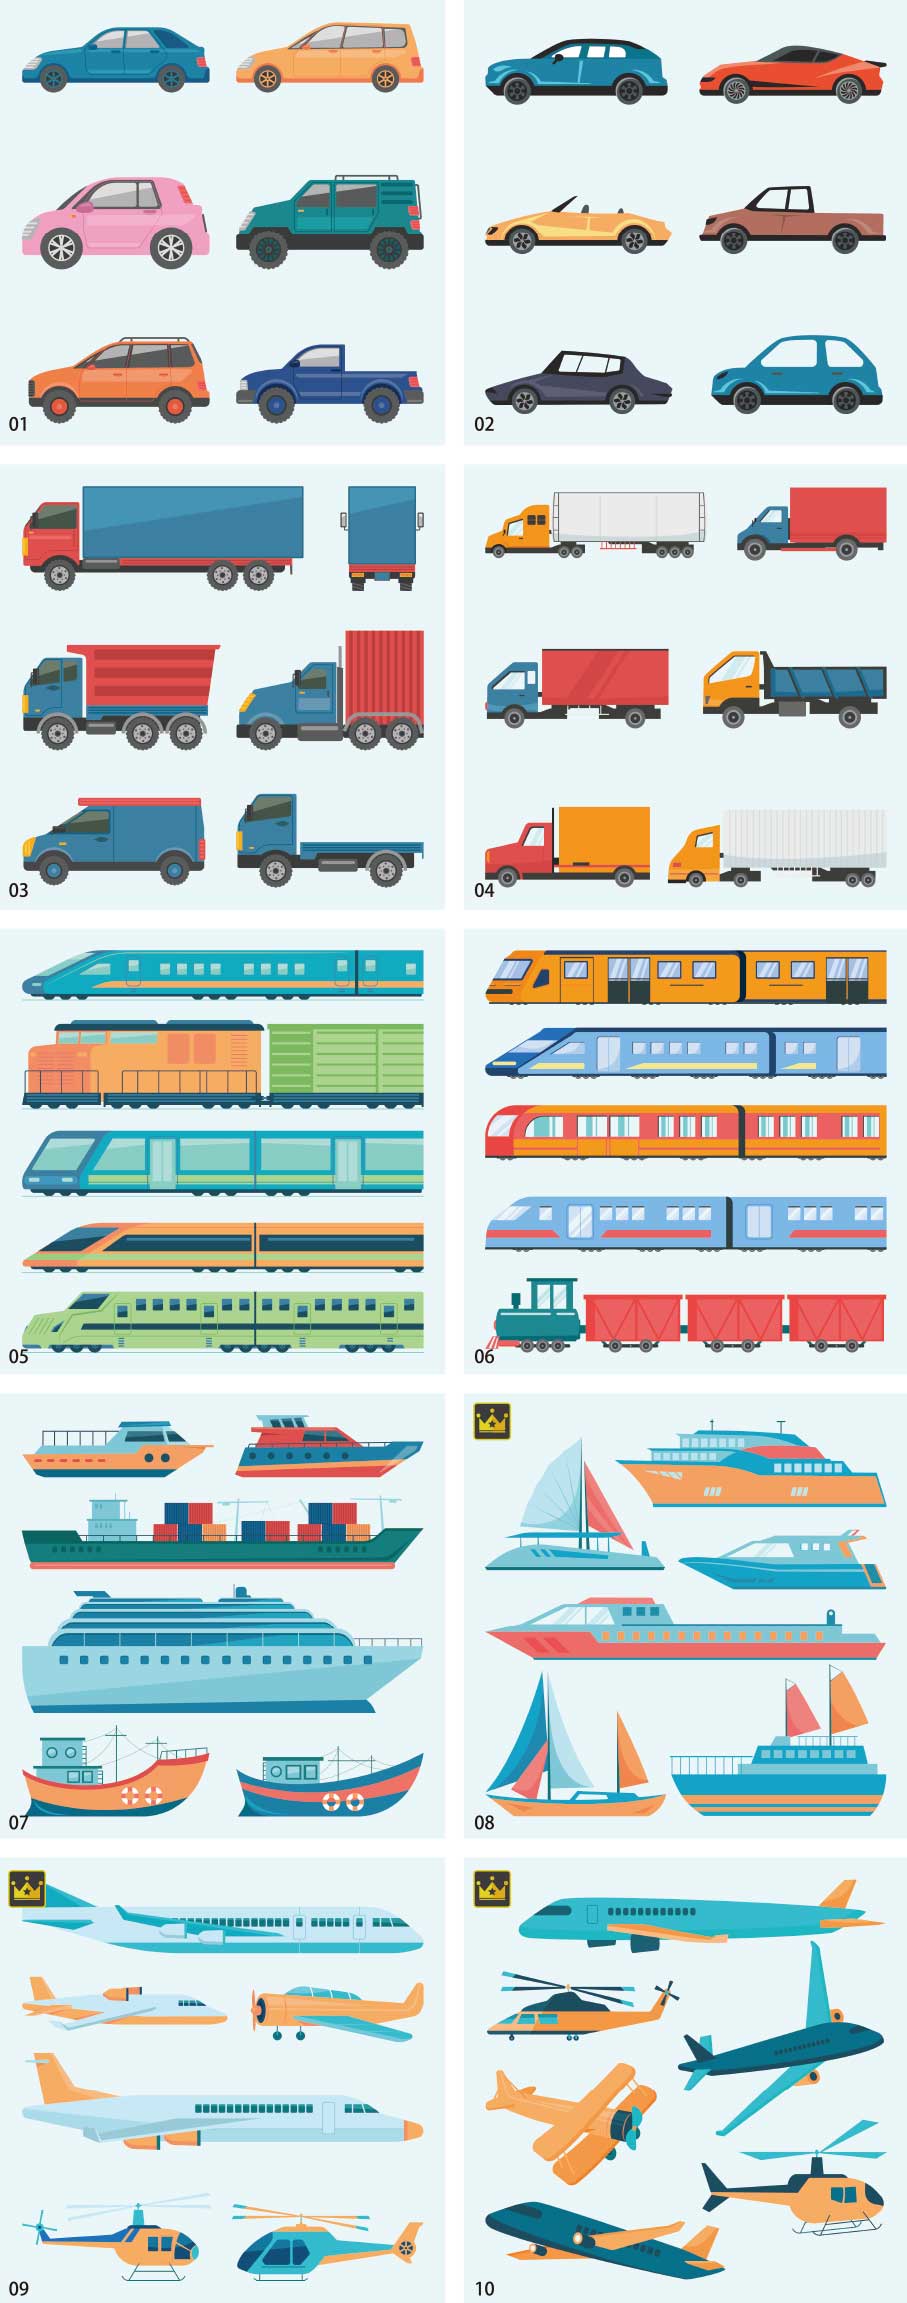 Bộ sưu tập minh họa các phương tiện giao thông